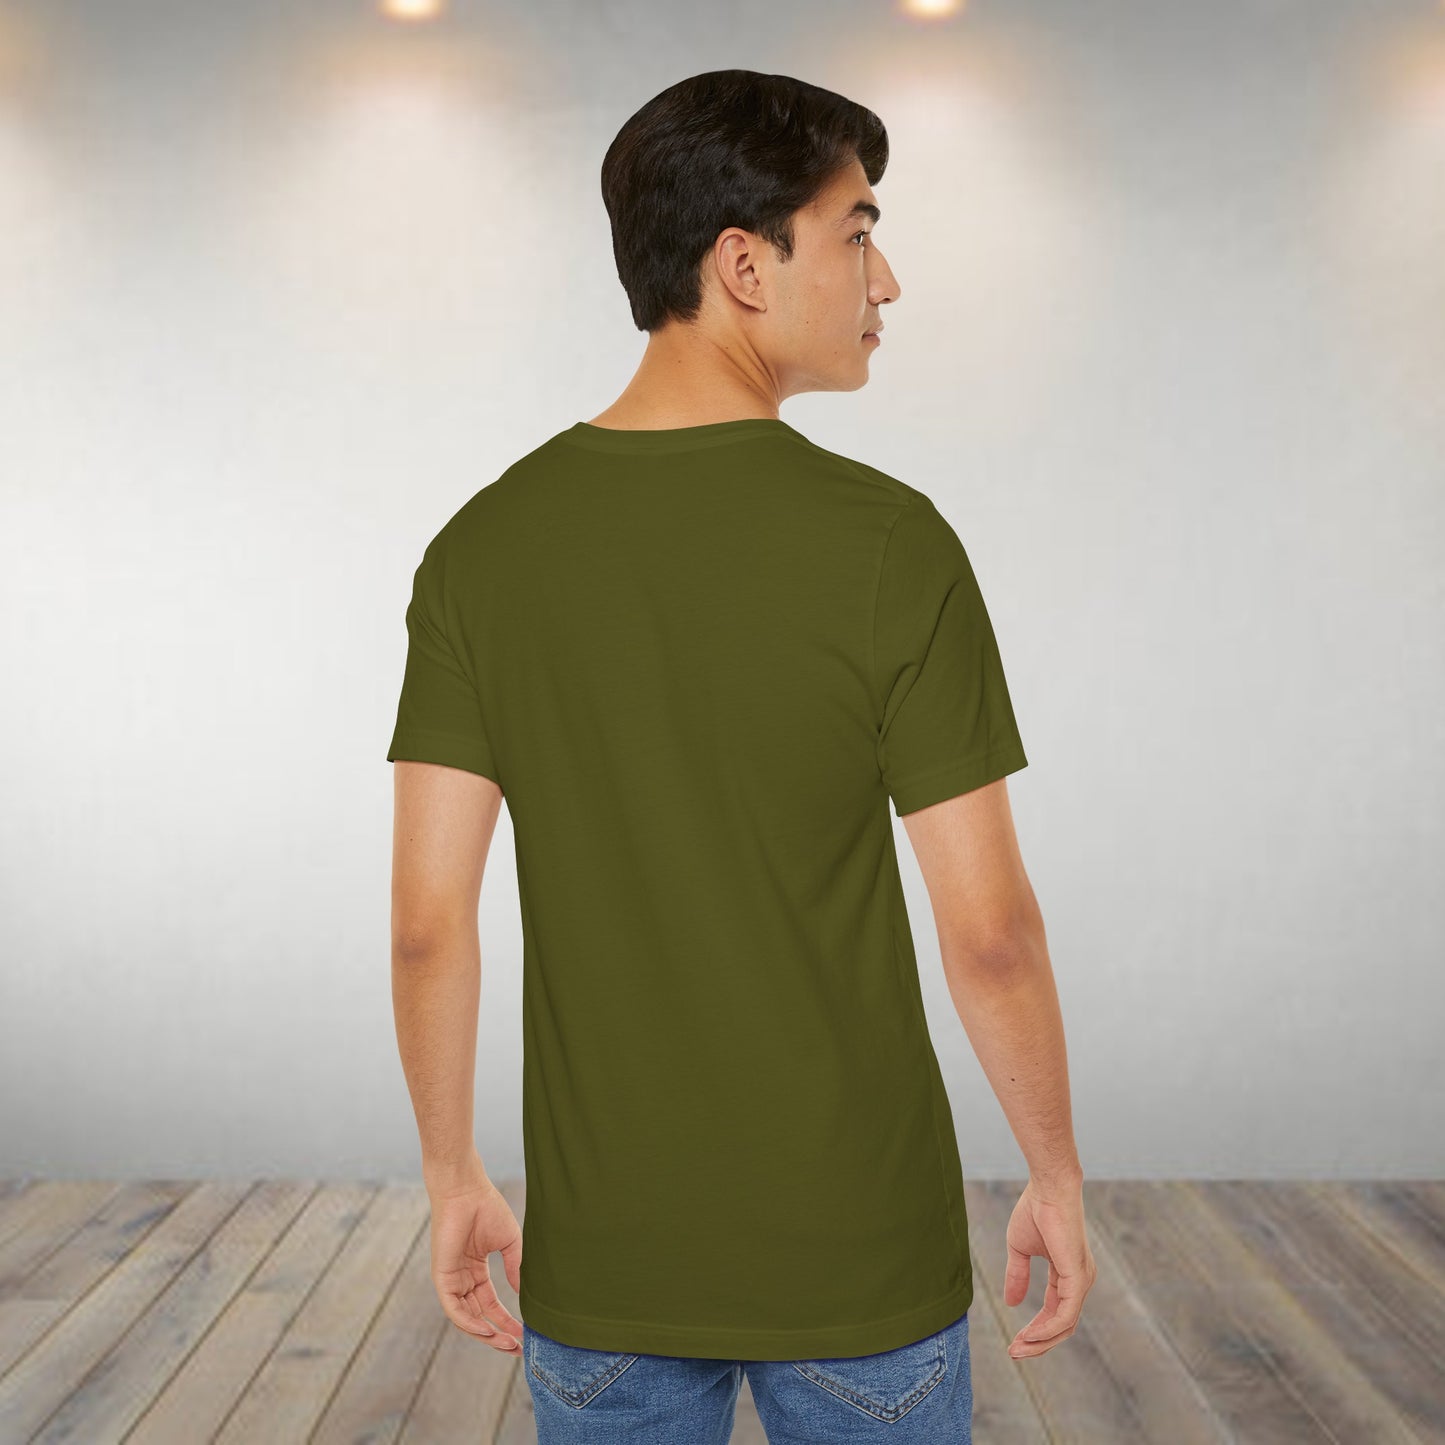 Yeti Fishing Shirt, Sasquatch Shirt, Bigfoot Fishing Shirt